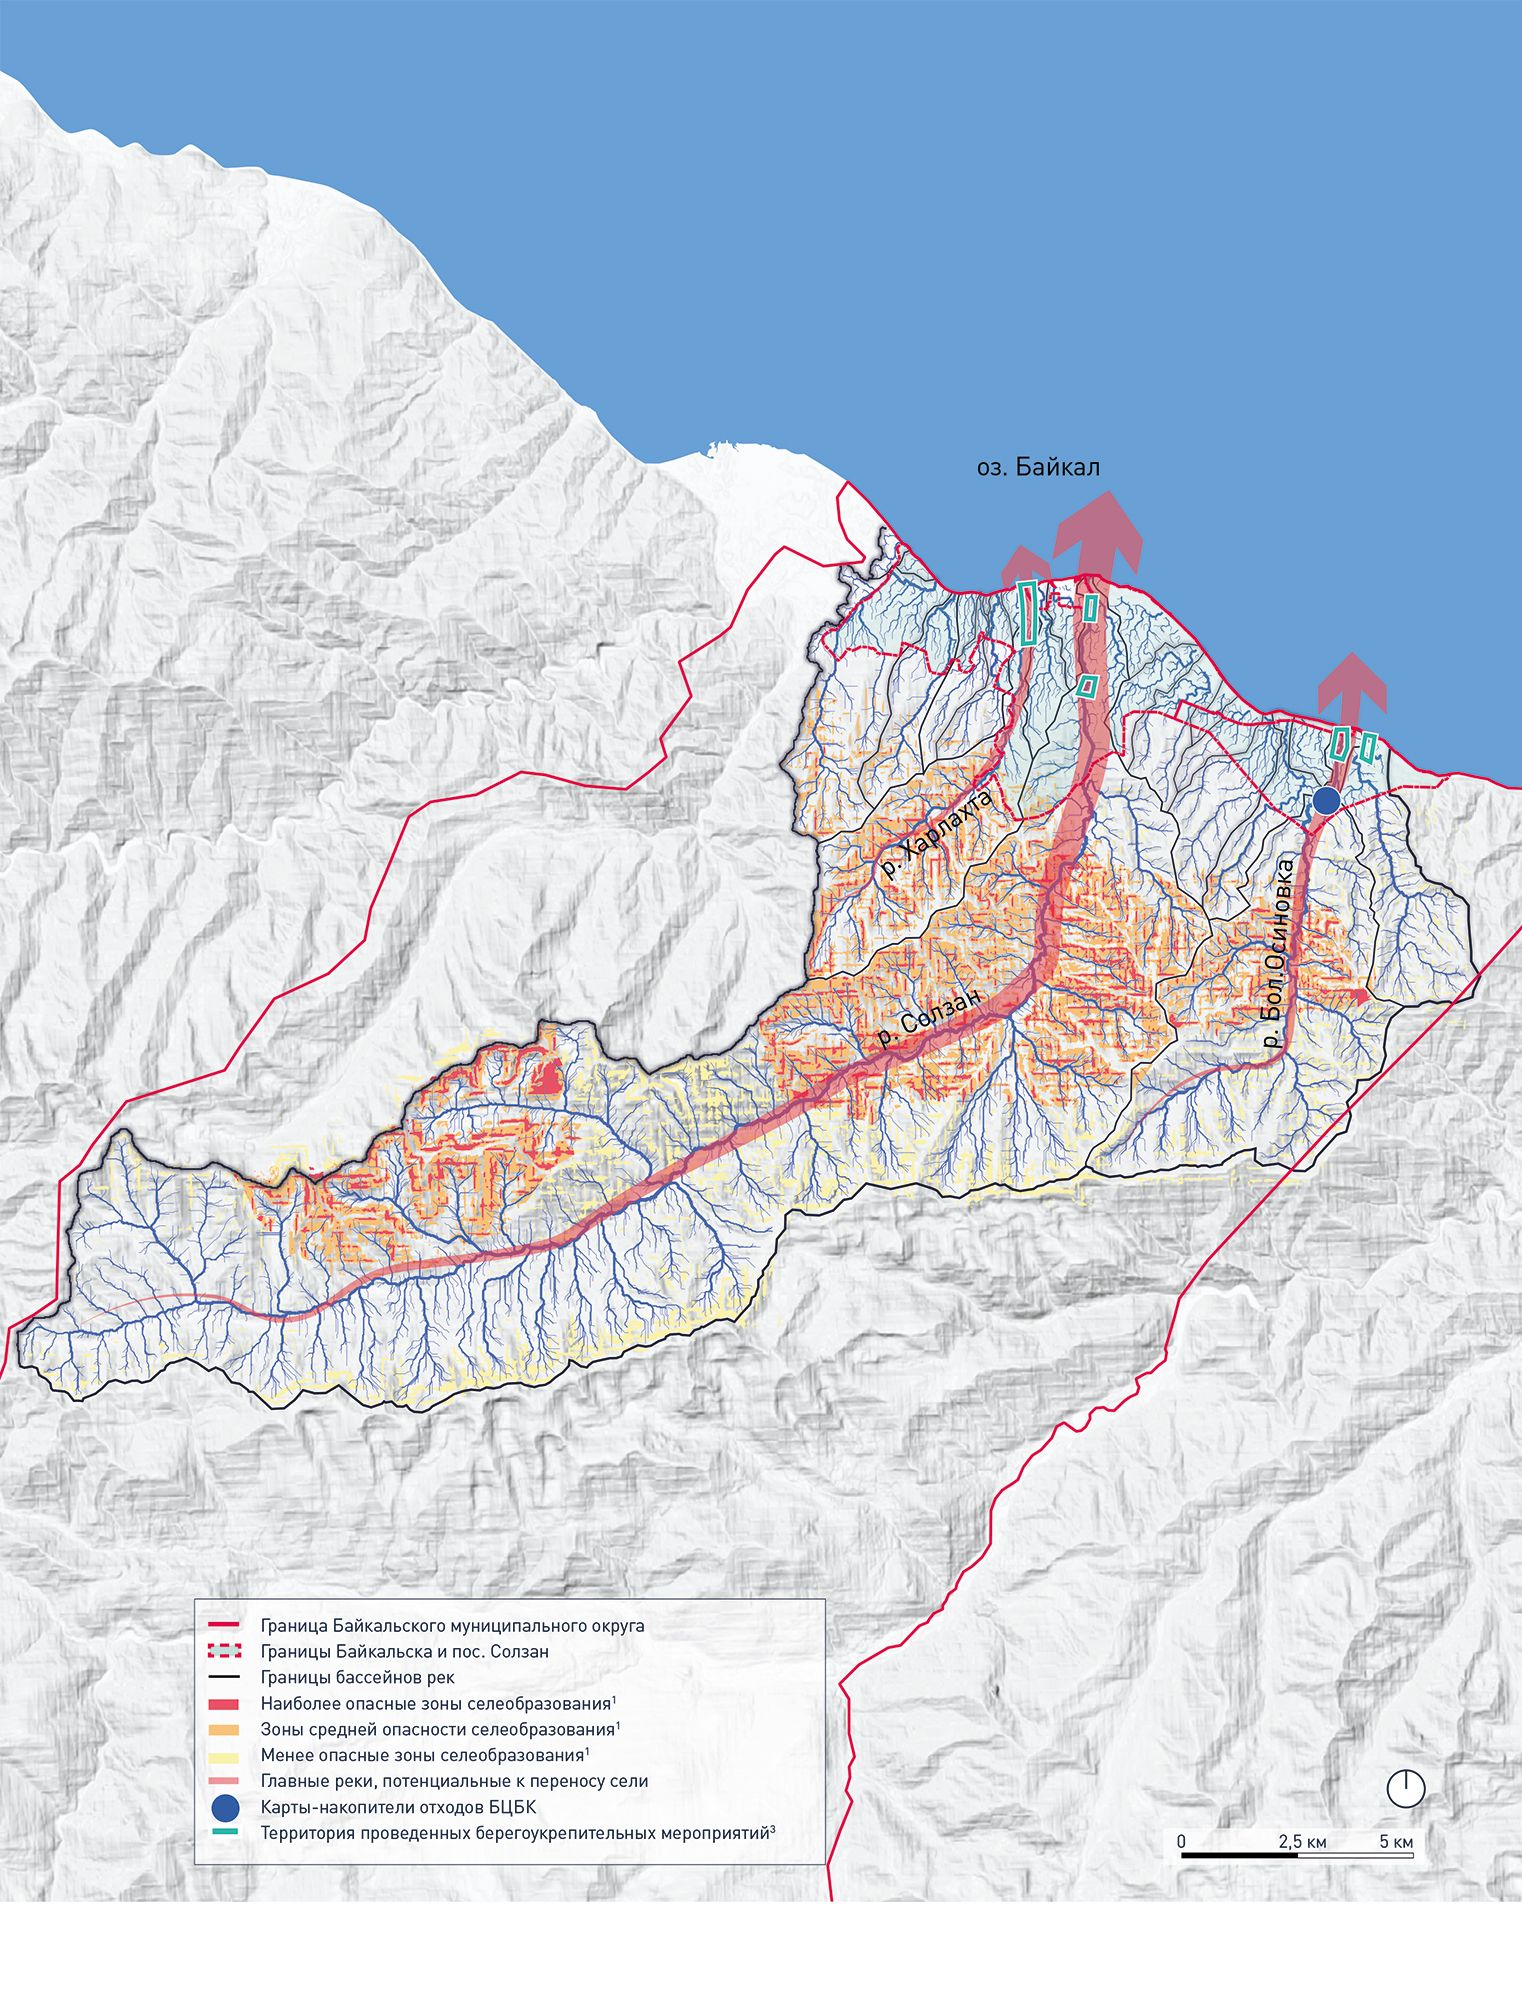 Карта бассейнов рек и оценки угрозы селевых потоков